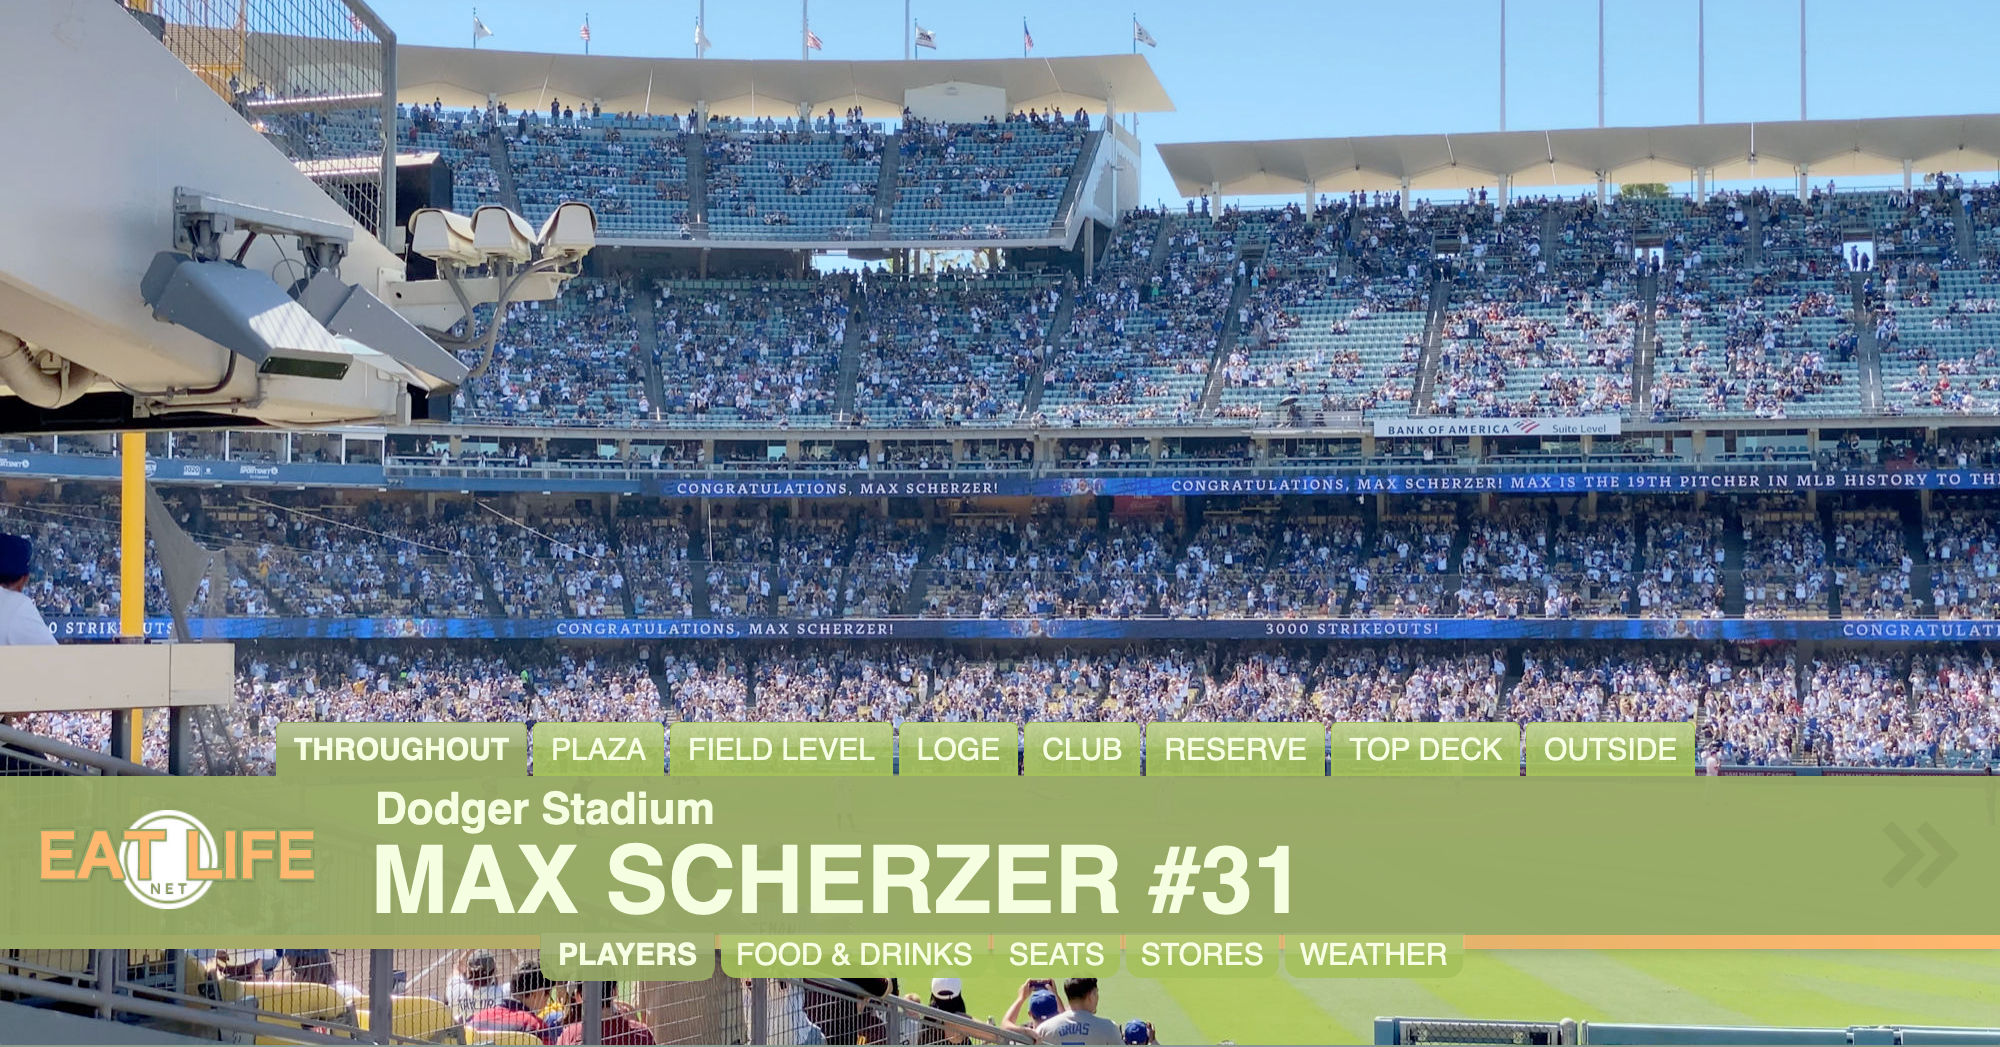 Max Scherzer #31